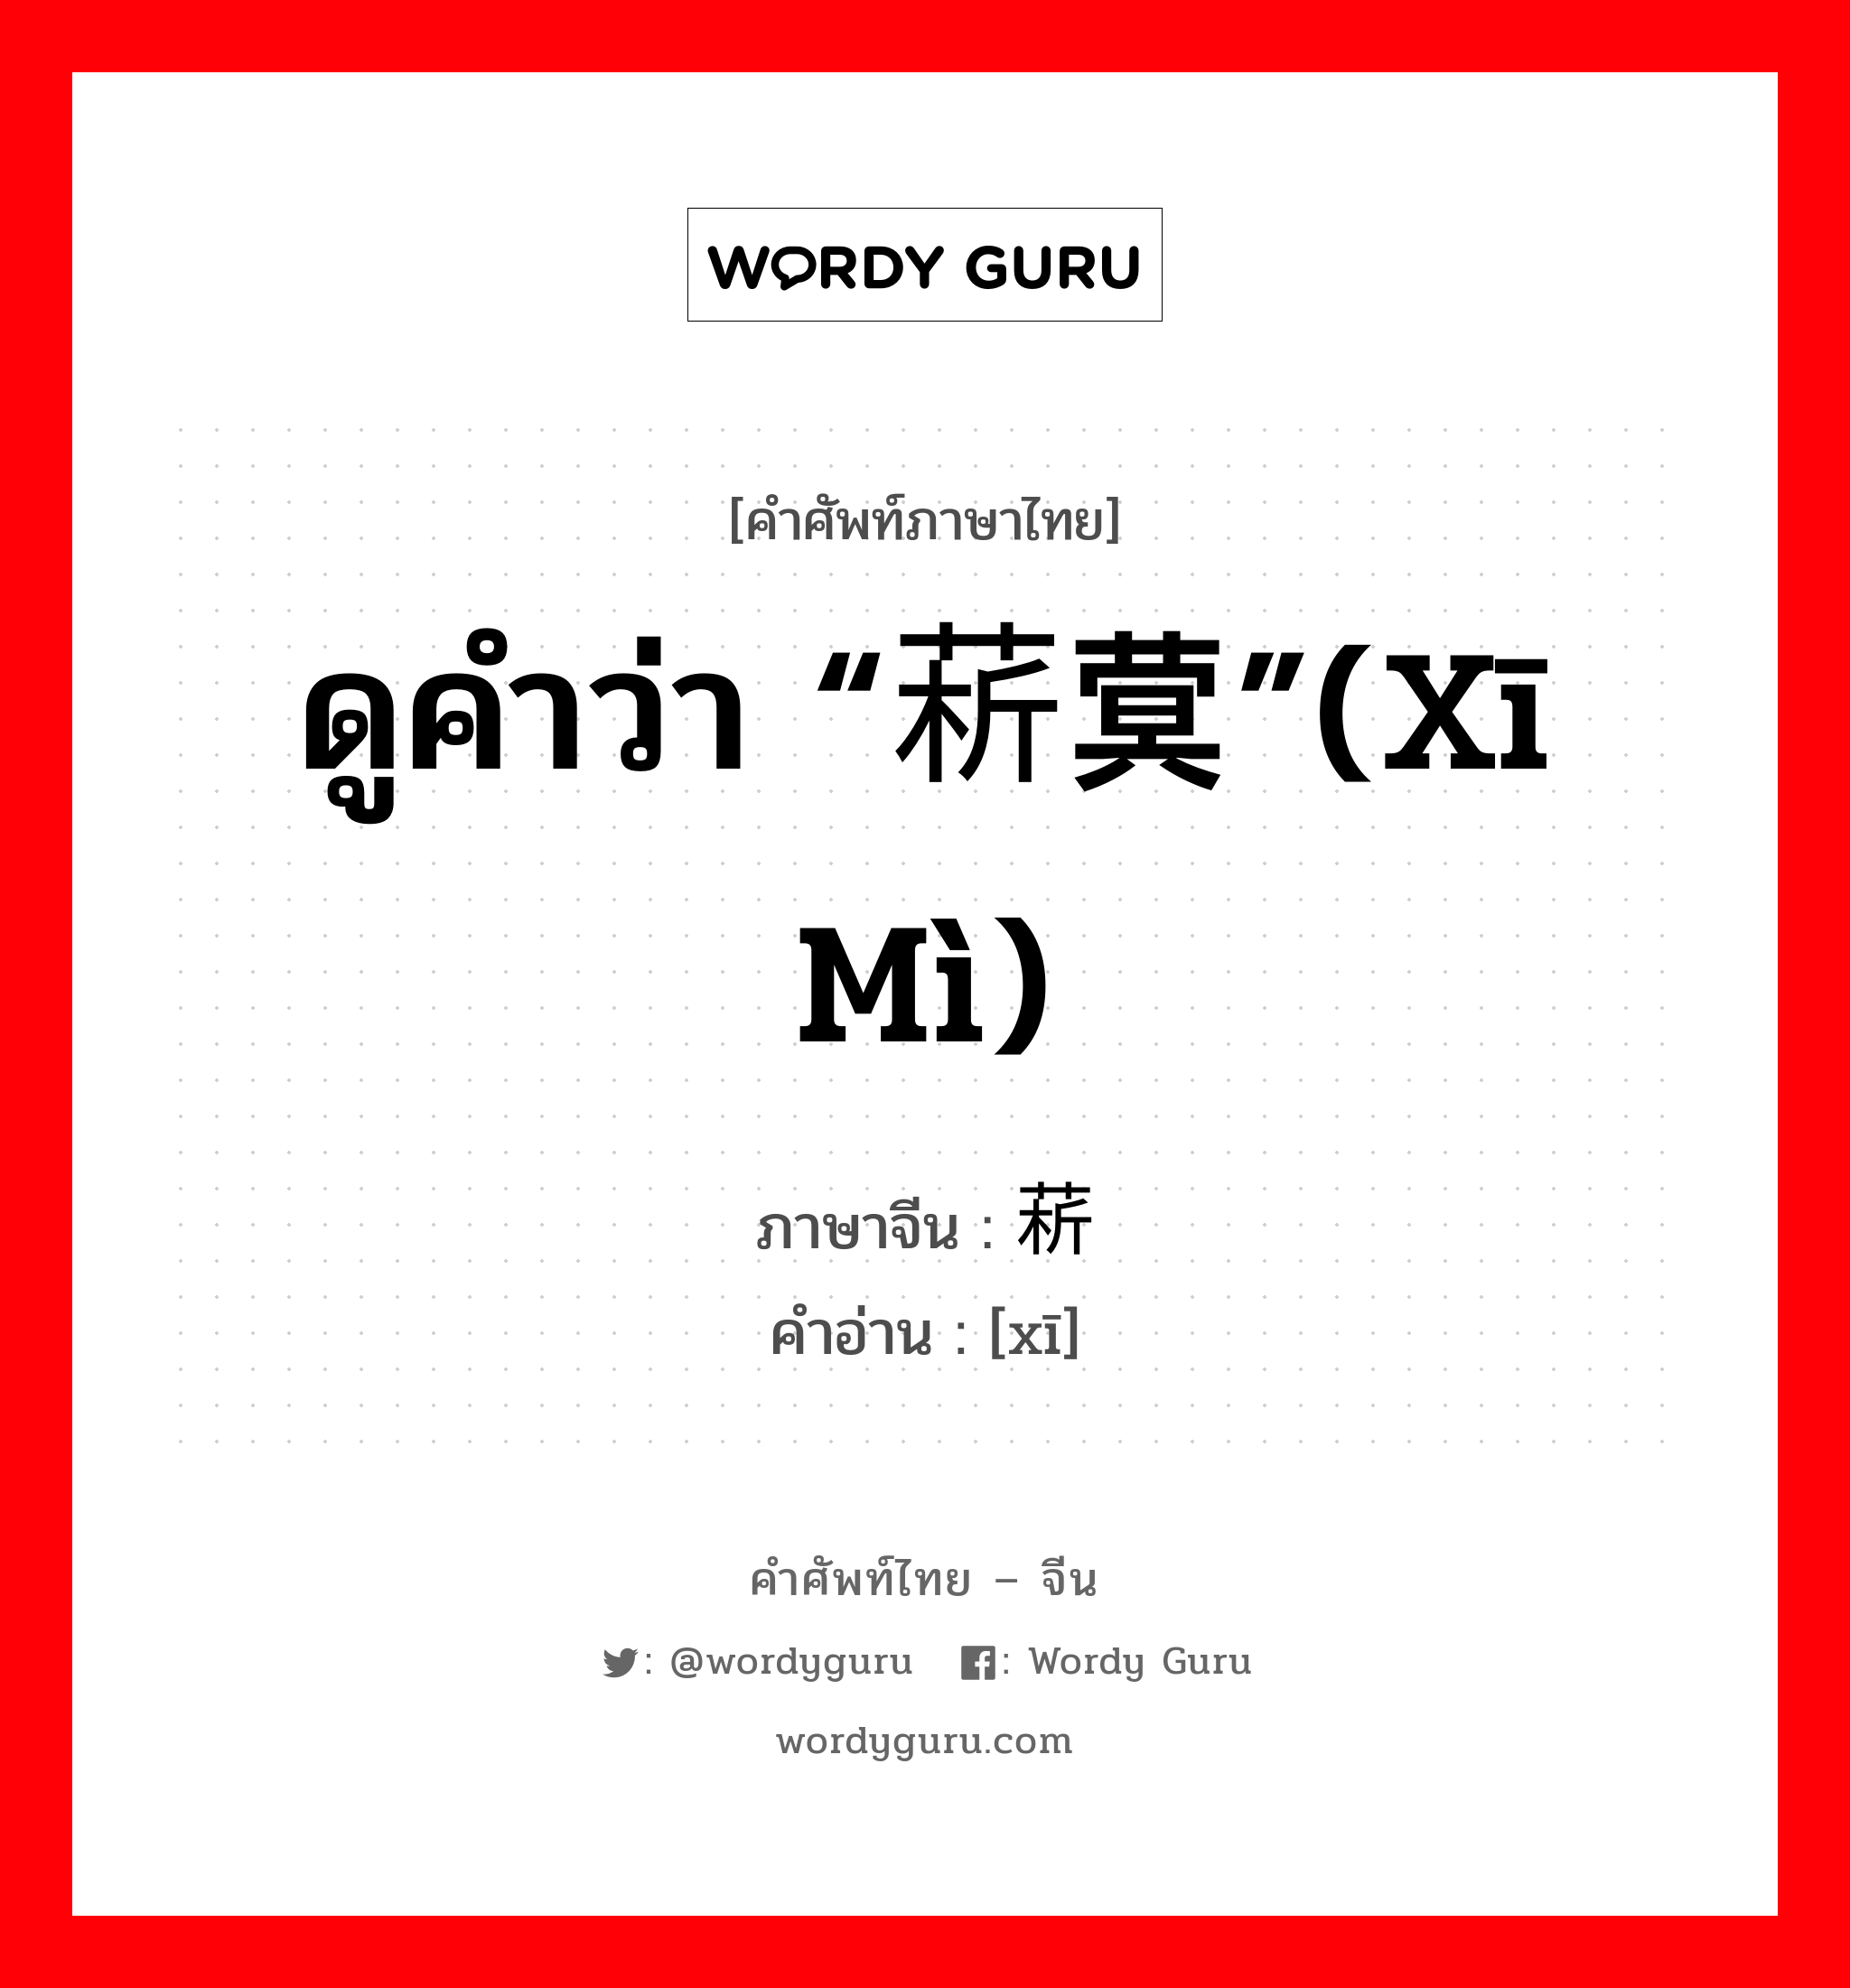 ดูคำว่า “菥蓂”(xī mì) ภาษาจีนคืออะไร, คำศัพท์ภาษาไทย - จีน ดูคำว่า “菥蓂”(xī mì) ภาษาจีน 菥 คำอ่าน [xī]